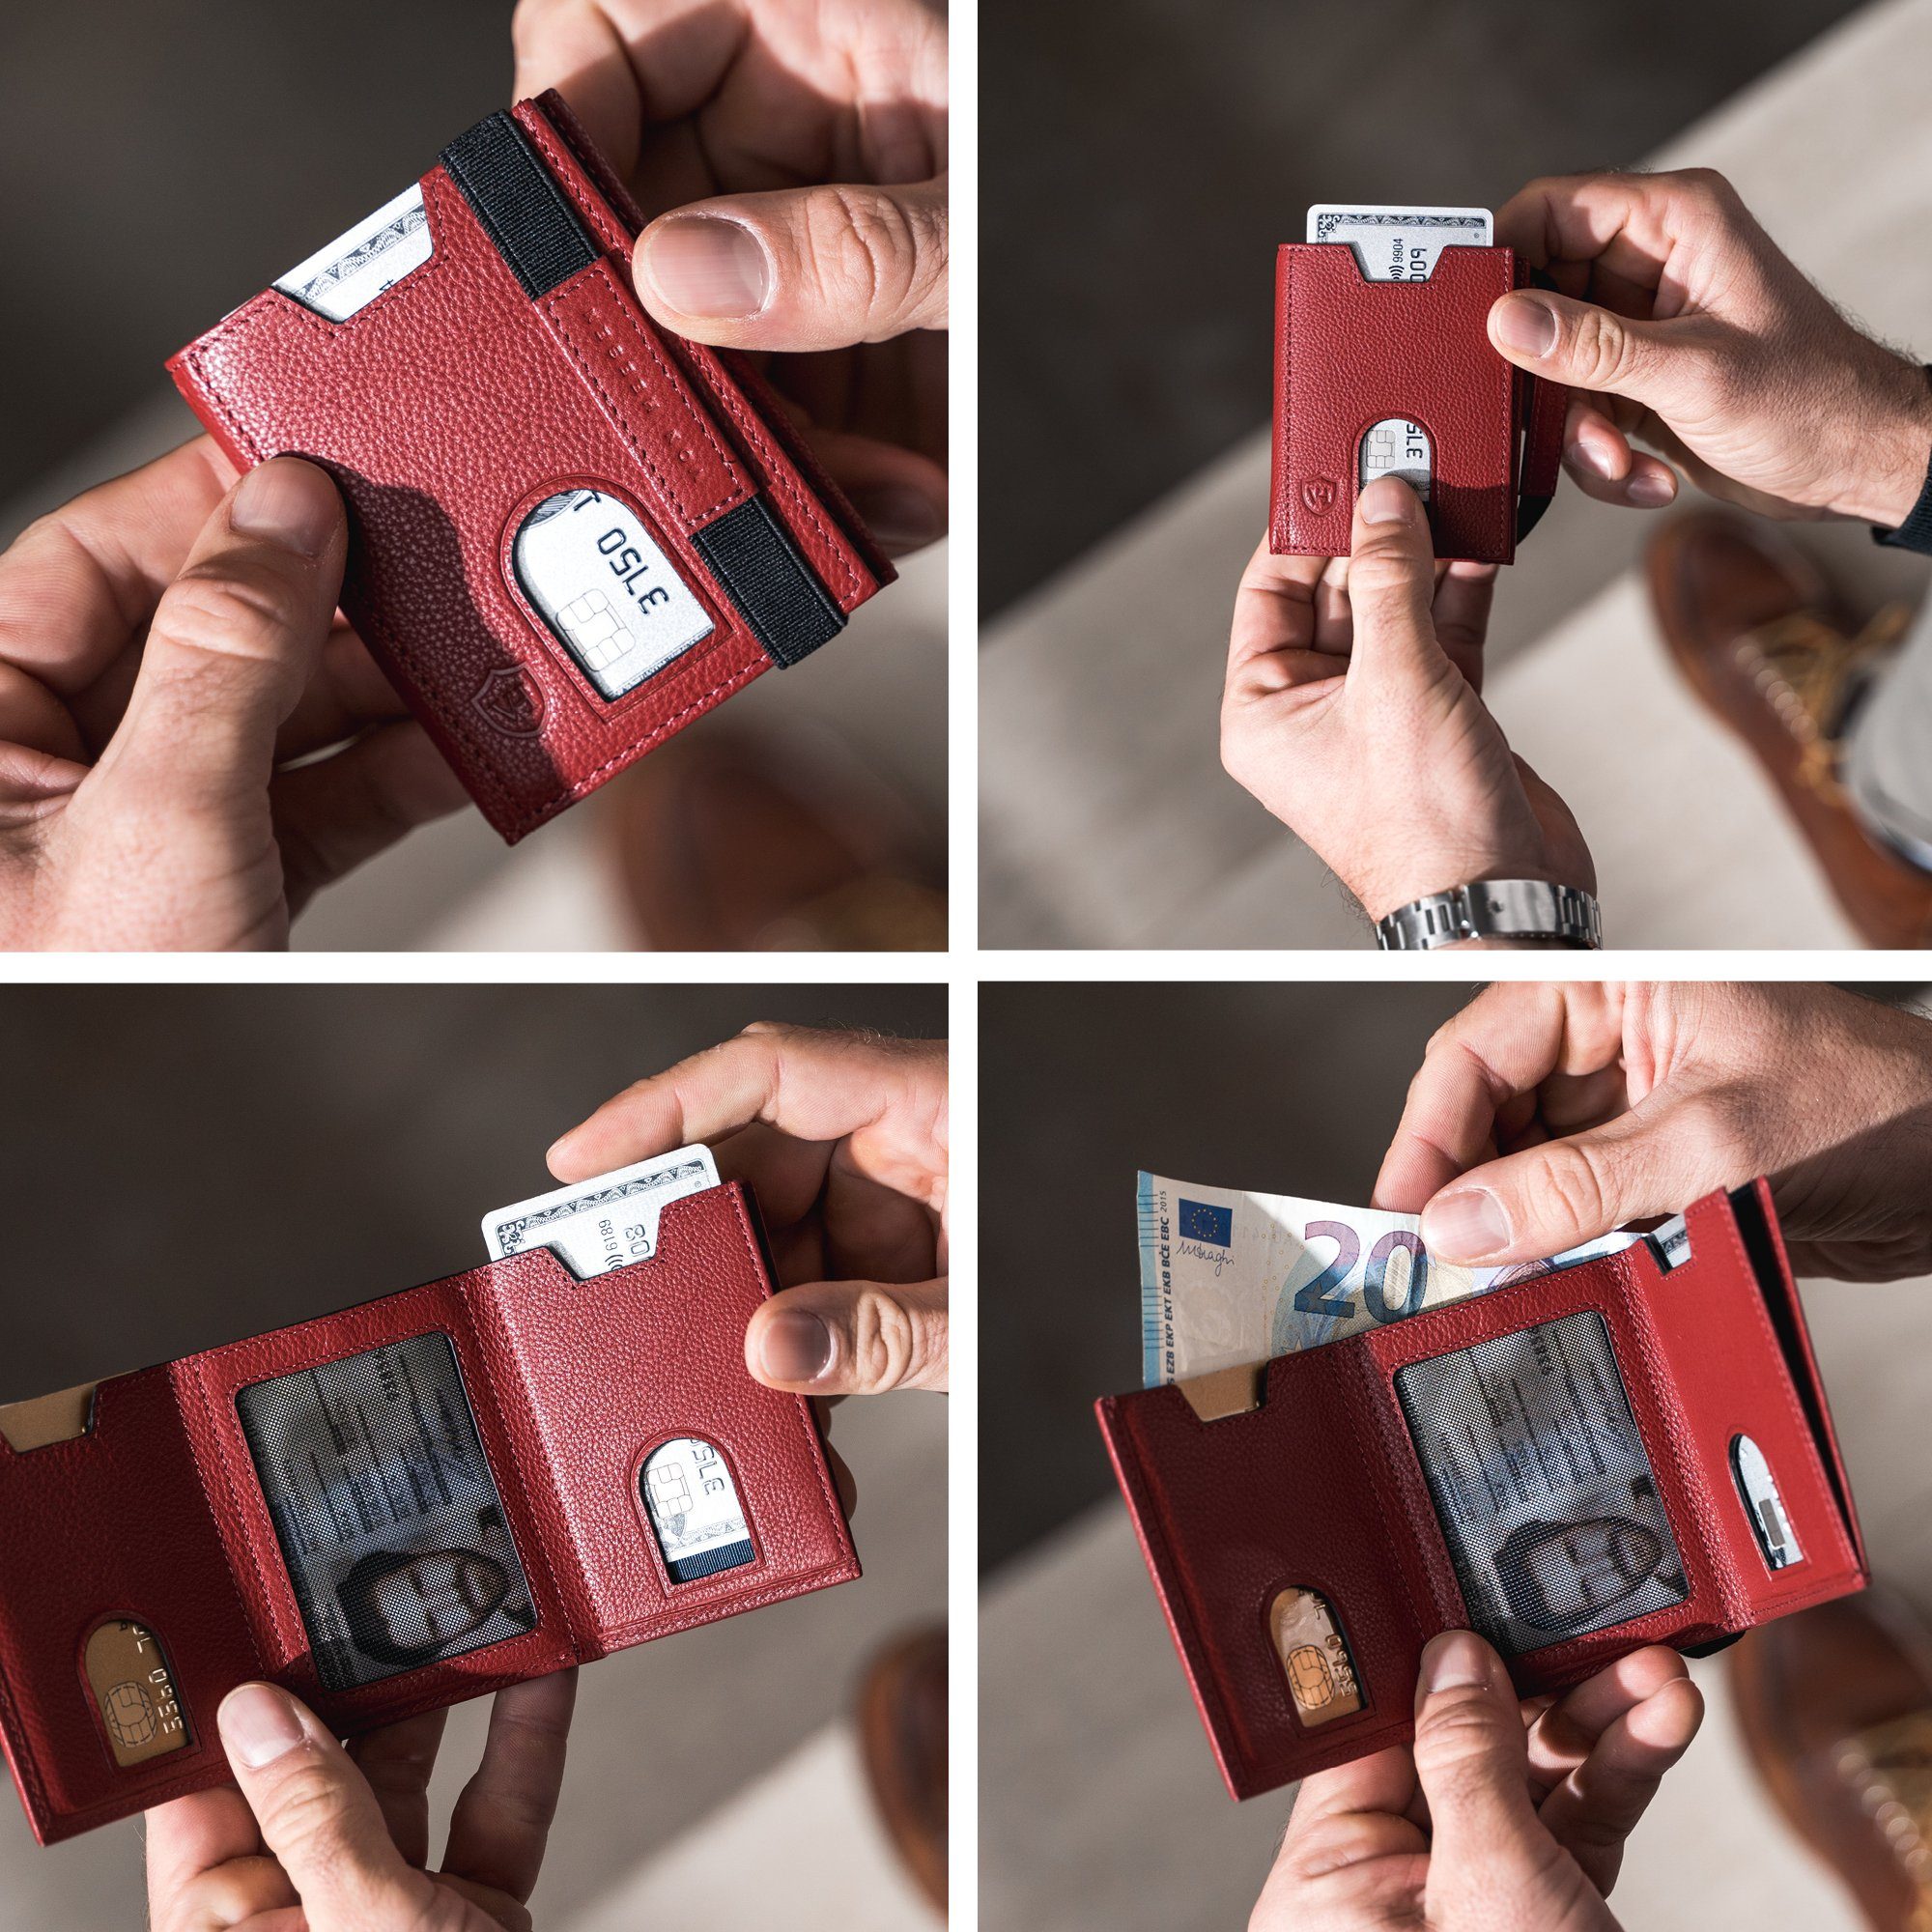 mit 6 Geldbörse Wallet Whizz Portemonnaie Kartenfächer, Rot Geldbeutel Geschenkbox inkl. & RFID-Schutz Slim Wallet HEESEN VON